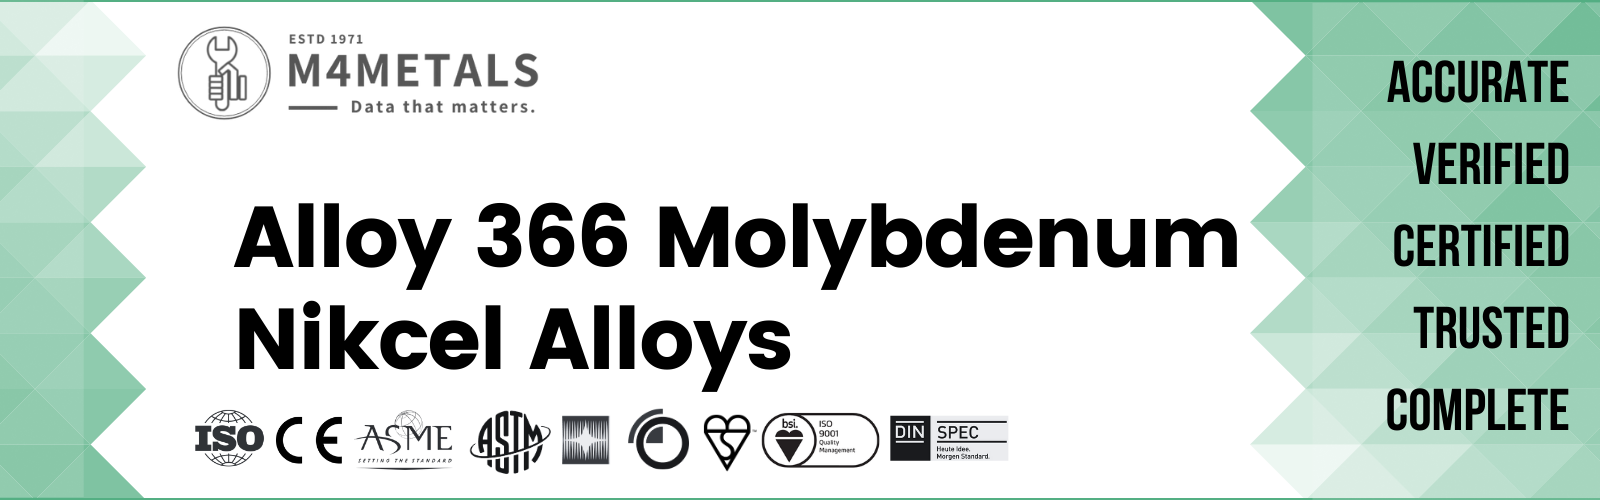 Molybdenum Alloy 366